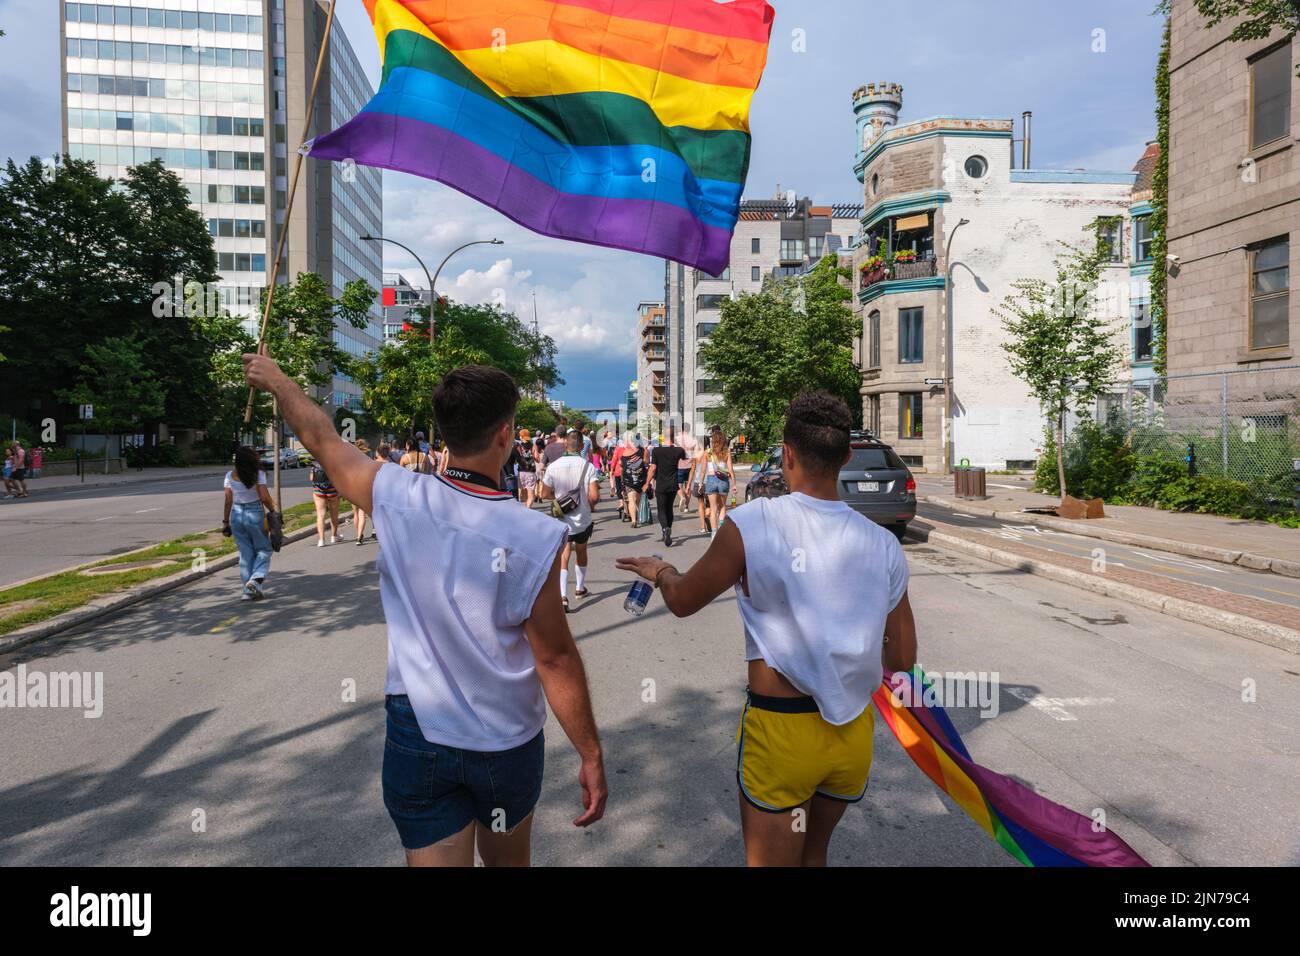 Montreal, CA - 7 de agosto de 2022: Dos jóvenes participan en una marcha espontánea del orgullo gay después de que el desfile oficial del orgullo fuera cancelado Foto de stock